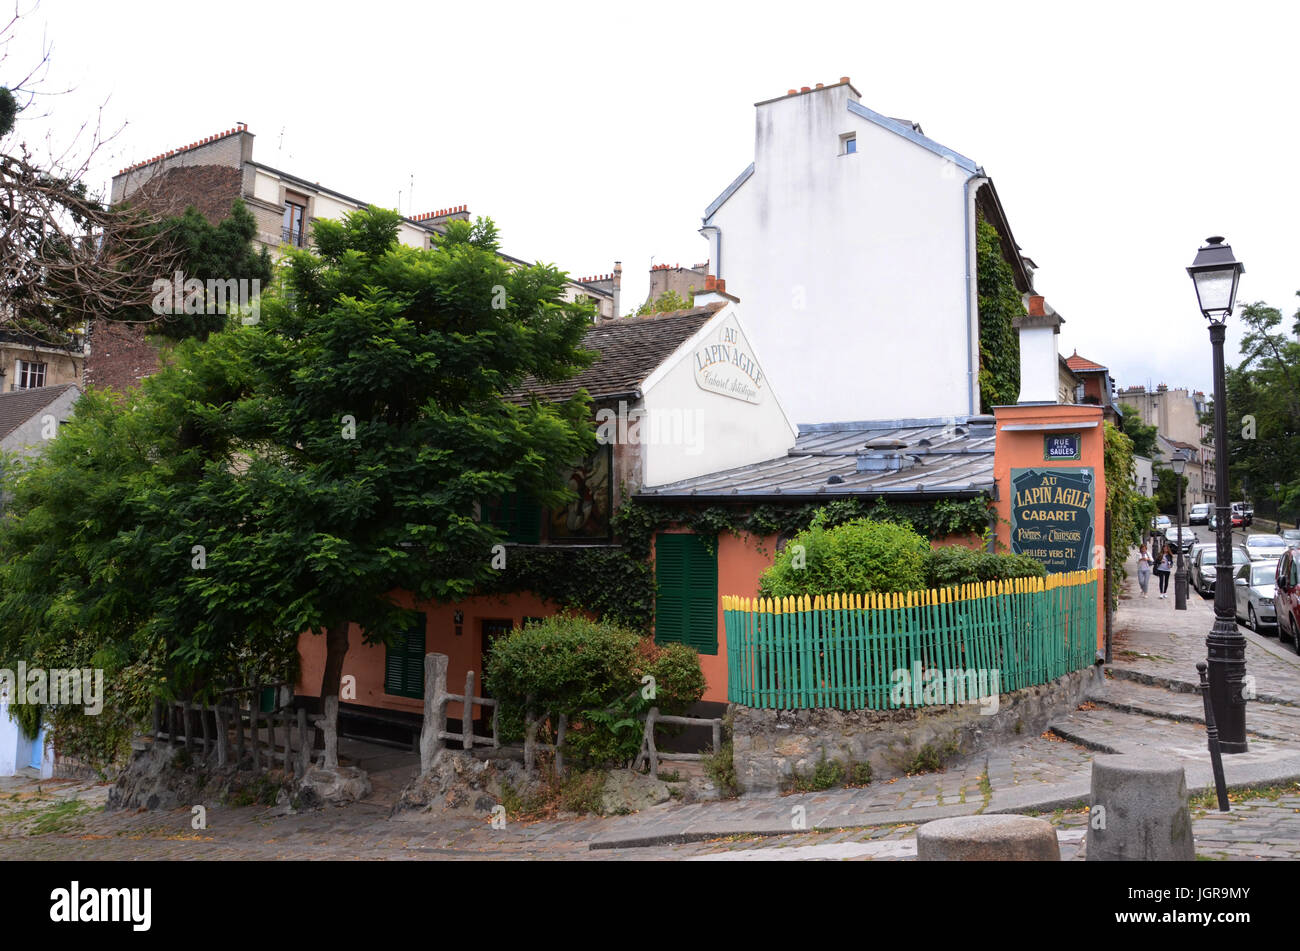 PARIS - 19 AOÛT 10 : Le cabaret Au Lapin Agile à Montmartre, Paris, France est montré le 10 août 2016. Il a été un favori des artistes tels que Picasso. Banque D'Images